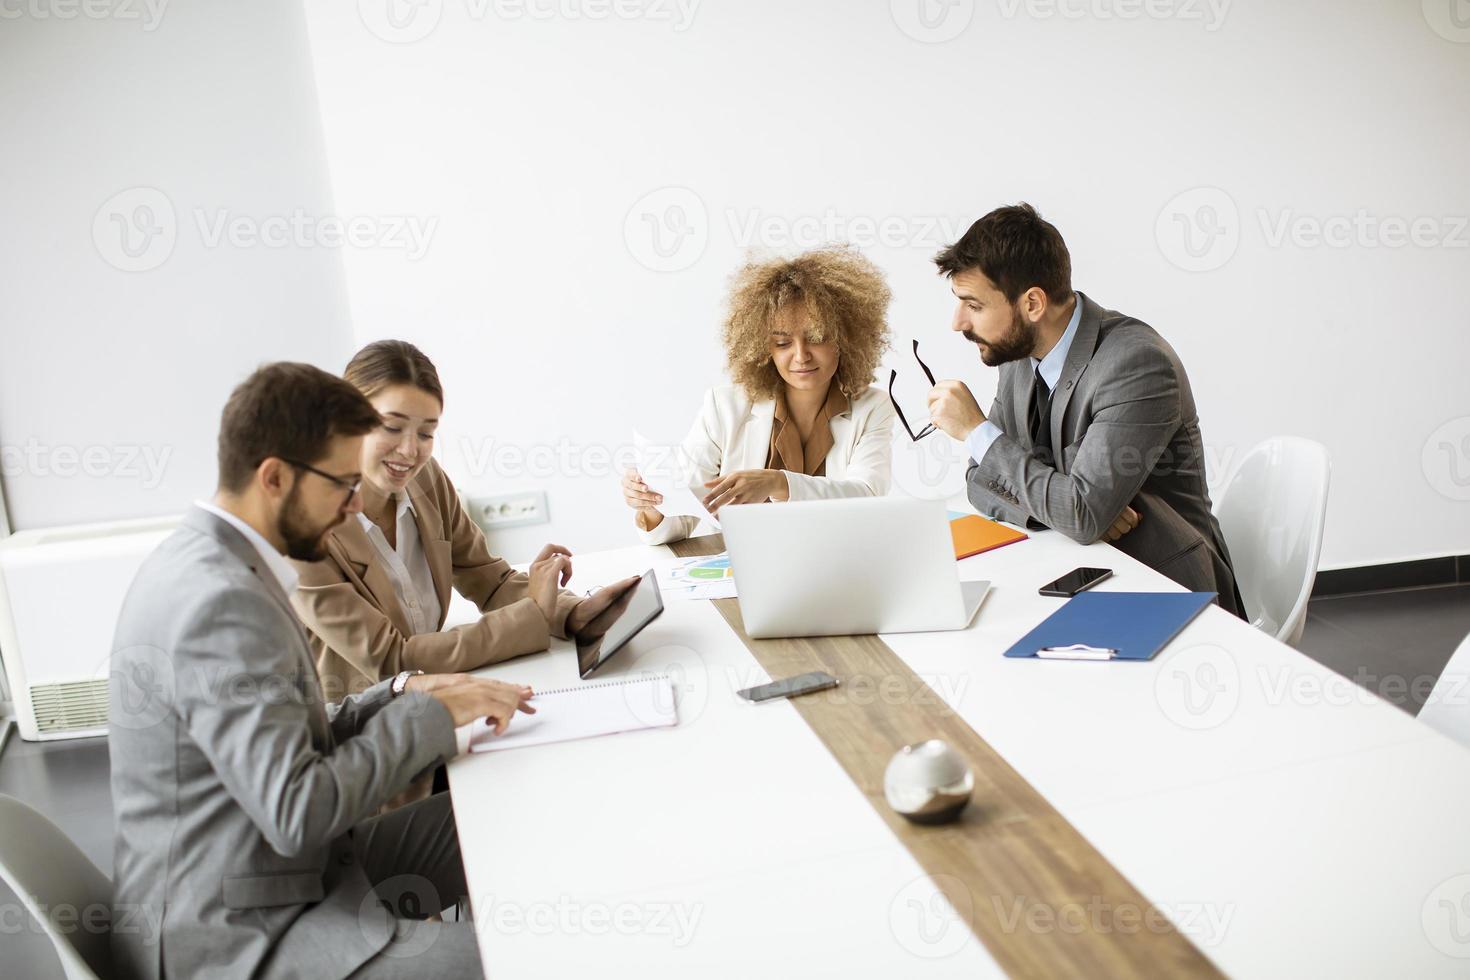 personnes travaillant ensemble lors d'une réunion photo